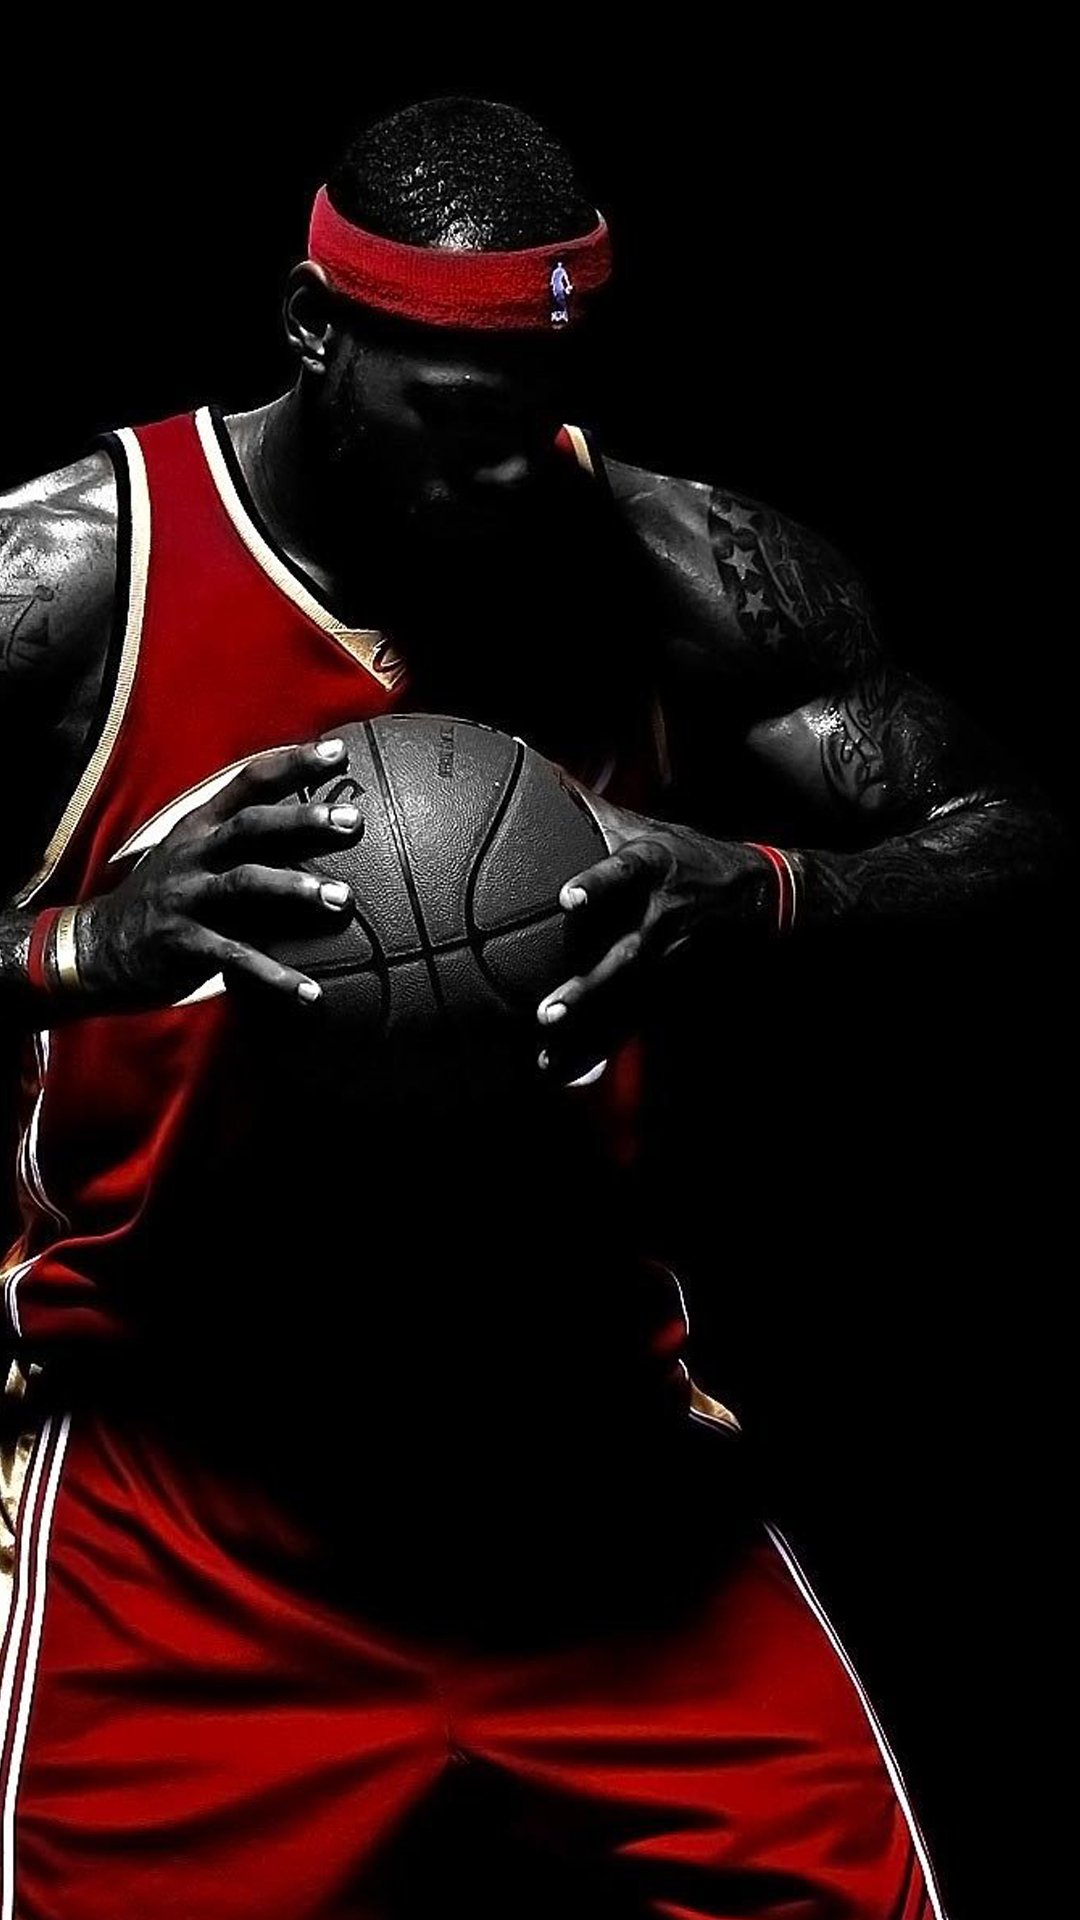 篮球明星勒布朗詹姆斯双手握球酷帅,高清图片,手机壁纸